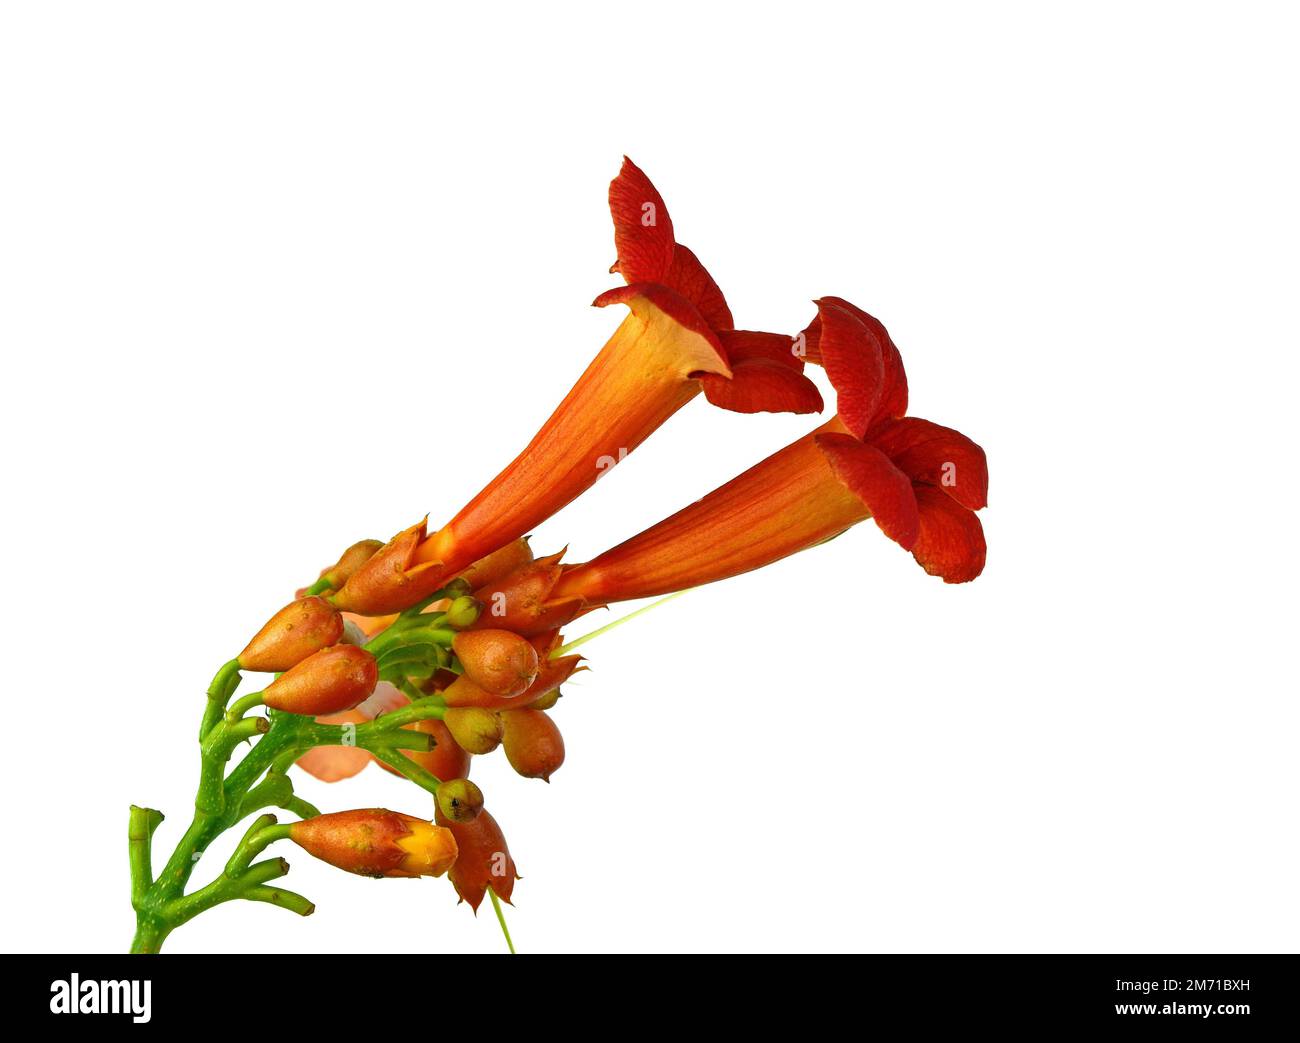 Flores de Campsis radicans (vid de trompeta o enredadera de trompeta) en la familia Bignoniaceae, también conocida como picazón de vaca o vid de colibrí, nativa del bosque en C Foto de stock